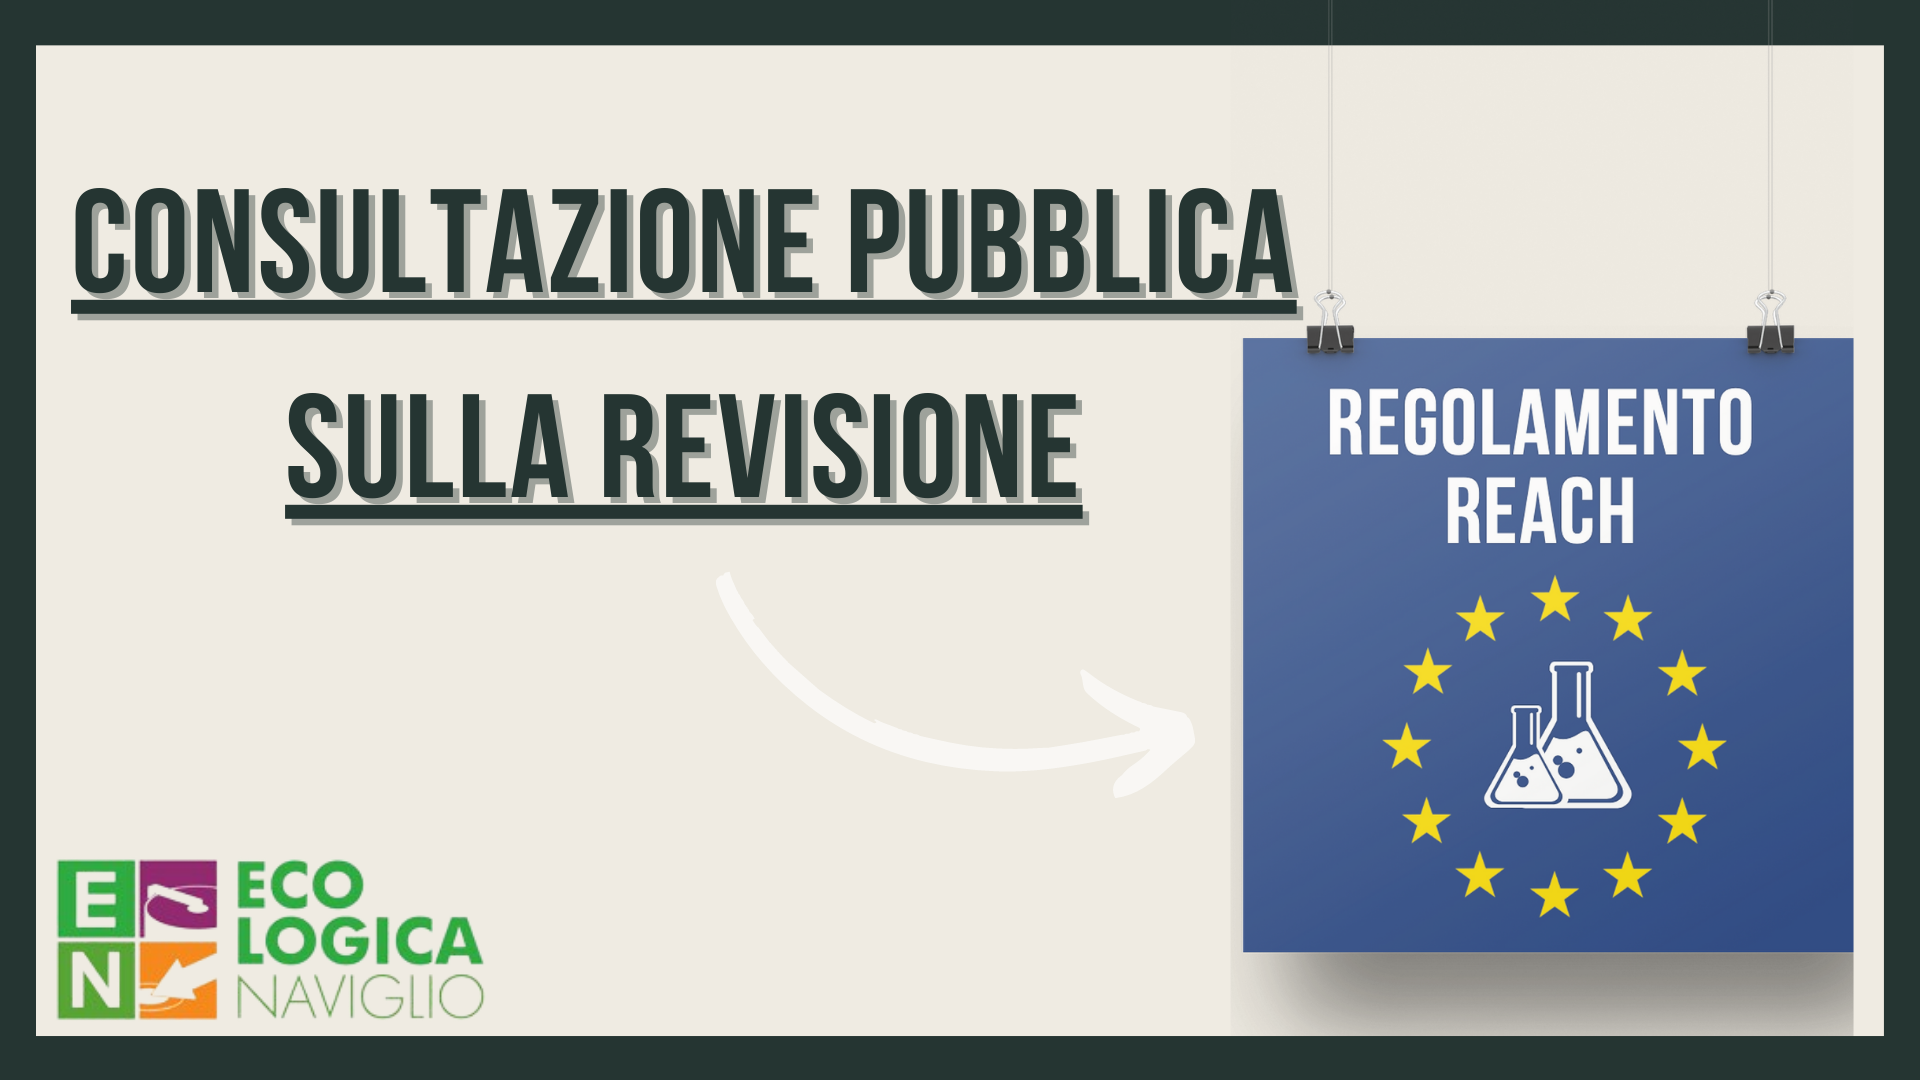 Regolamento REACH: consultazione pubblica sulla revisione